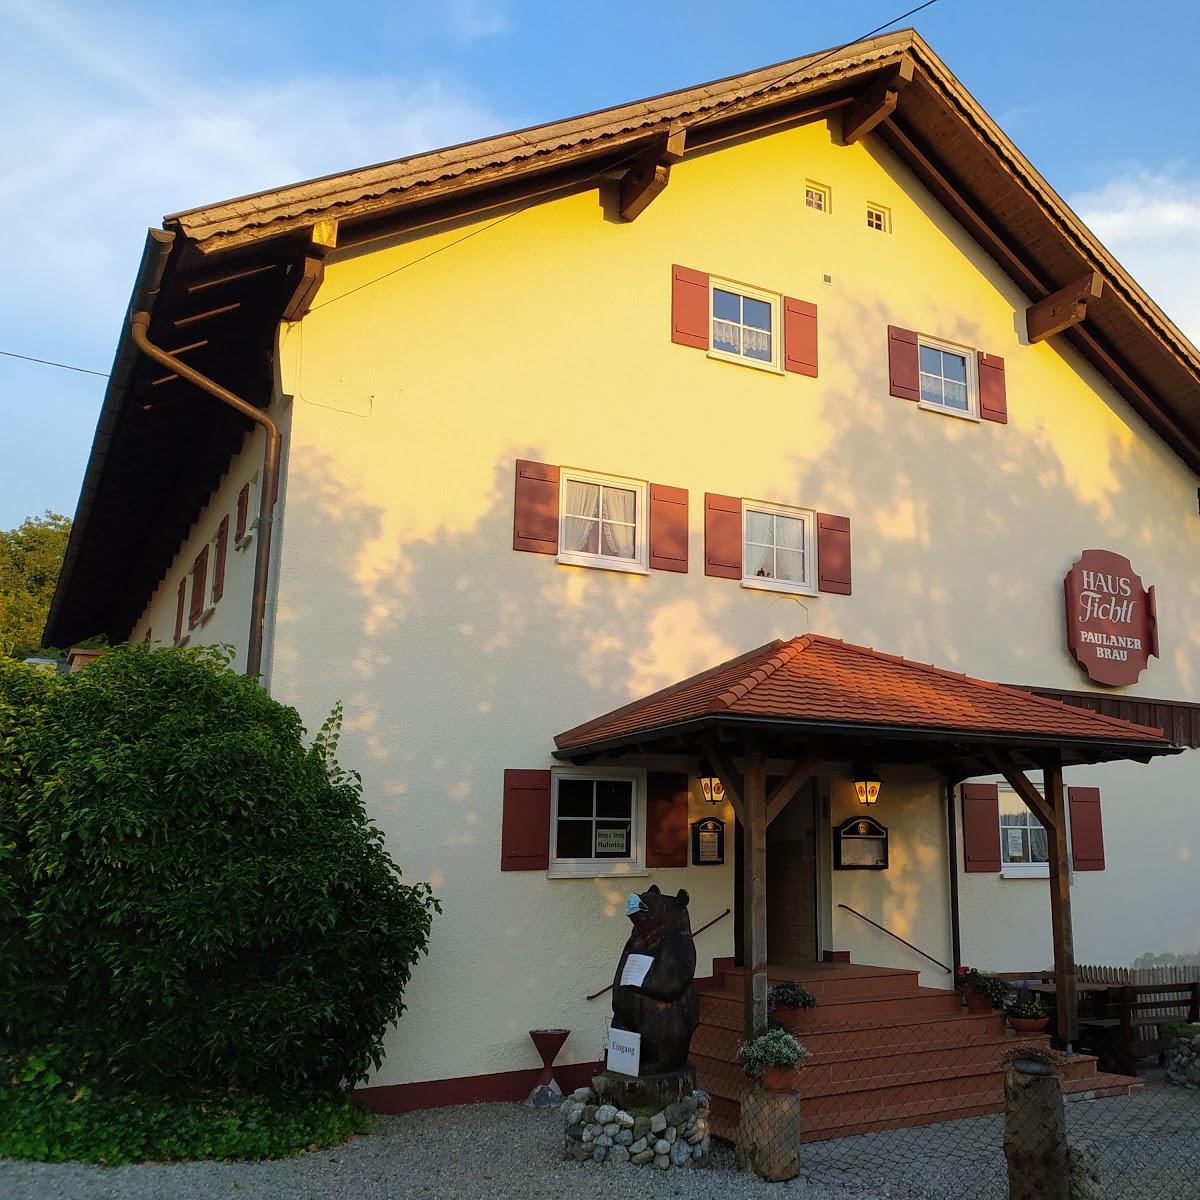 Restaurant "Haus Fichtl" in Burggen